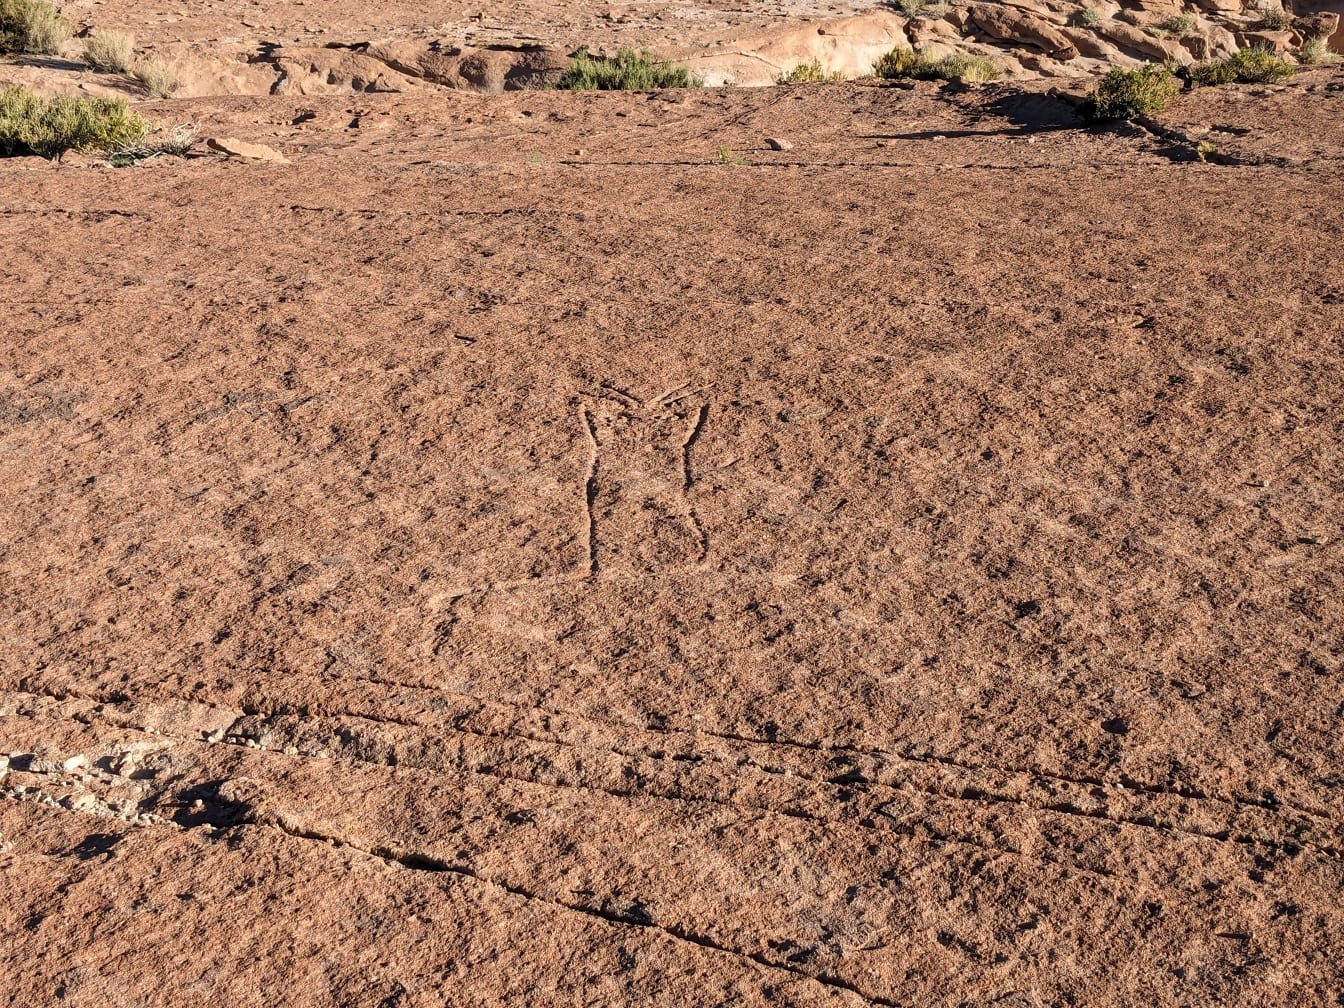 Esculturas rupestres no deserto semelhantes às linhas de Nazca